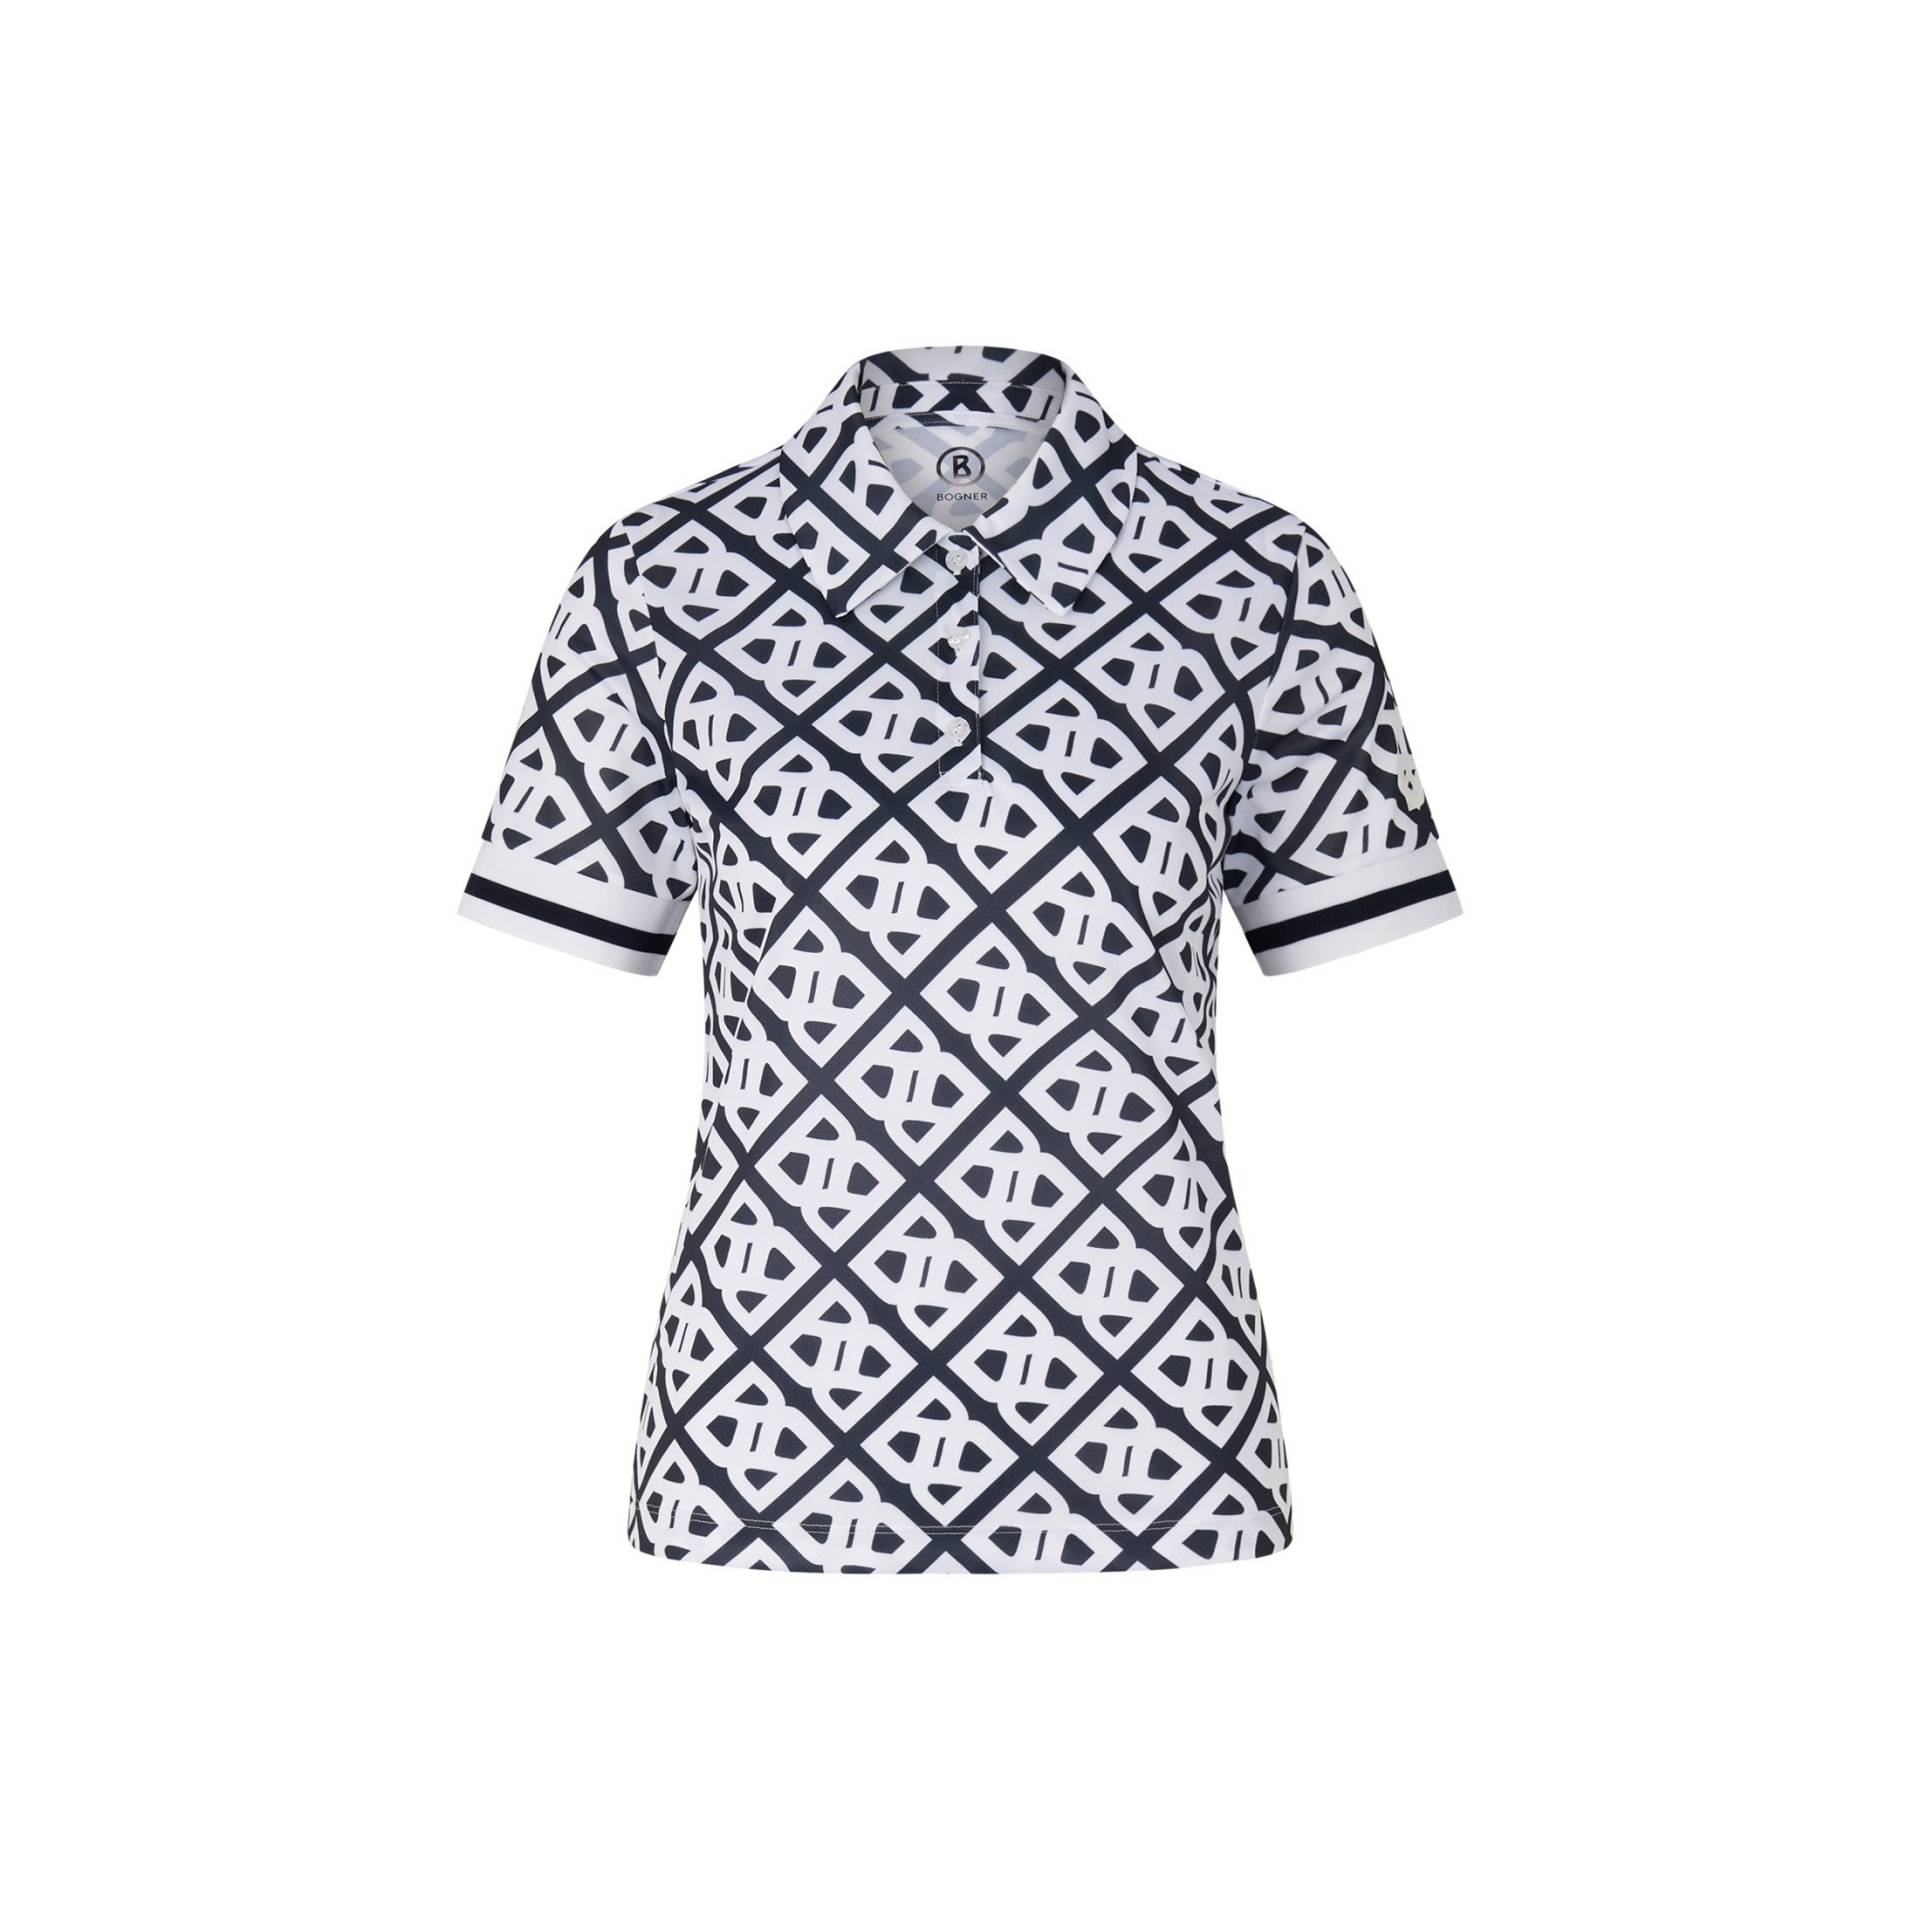 BOGNER SPORT Funktions-Polo-Shirt Calysa für Damen - Navy-Blau/Weiß - 36 von BOGNER Sport